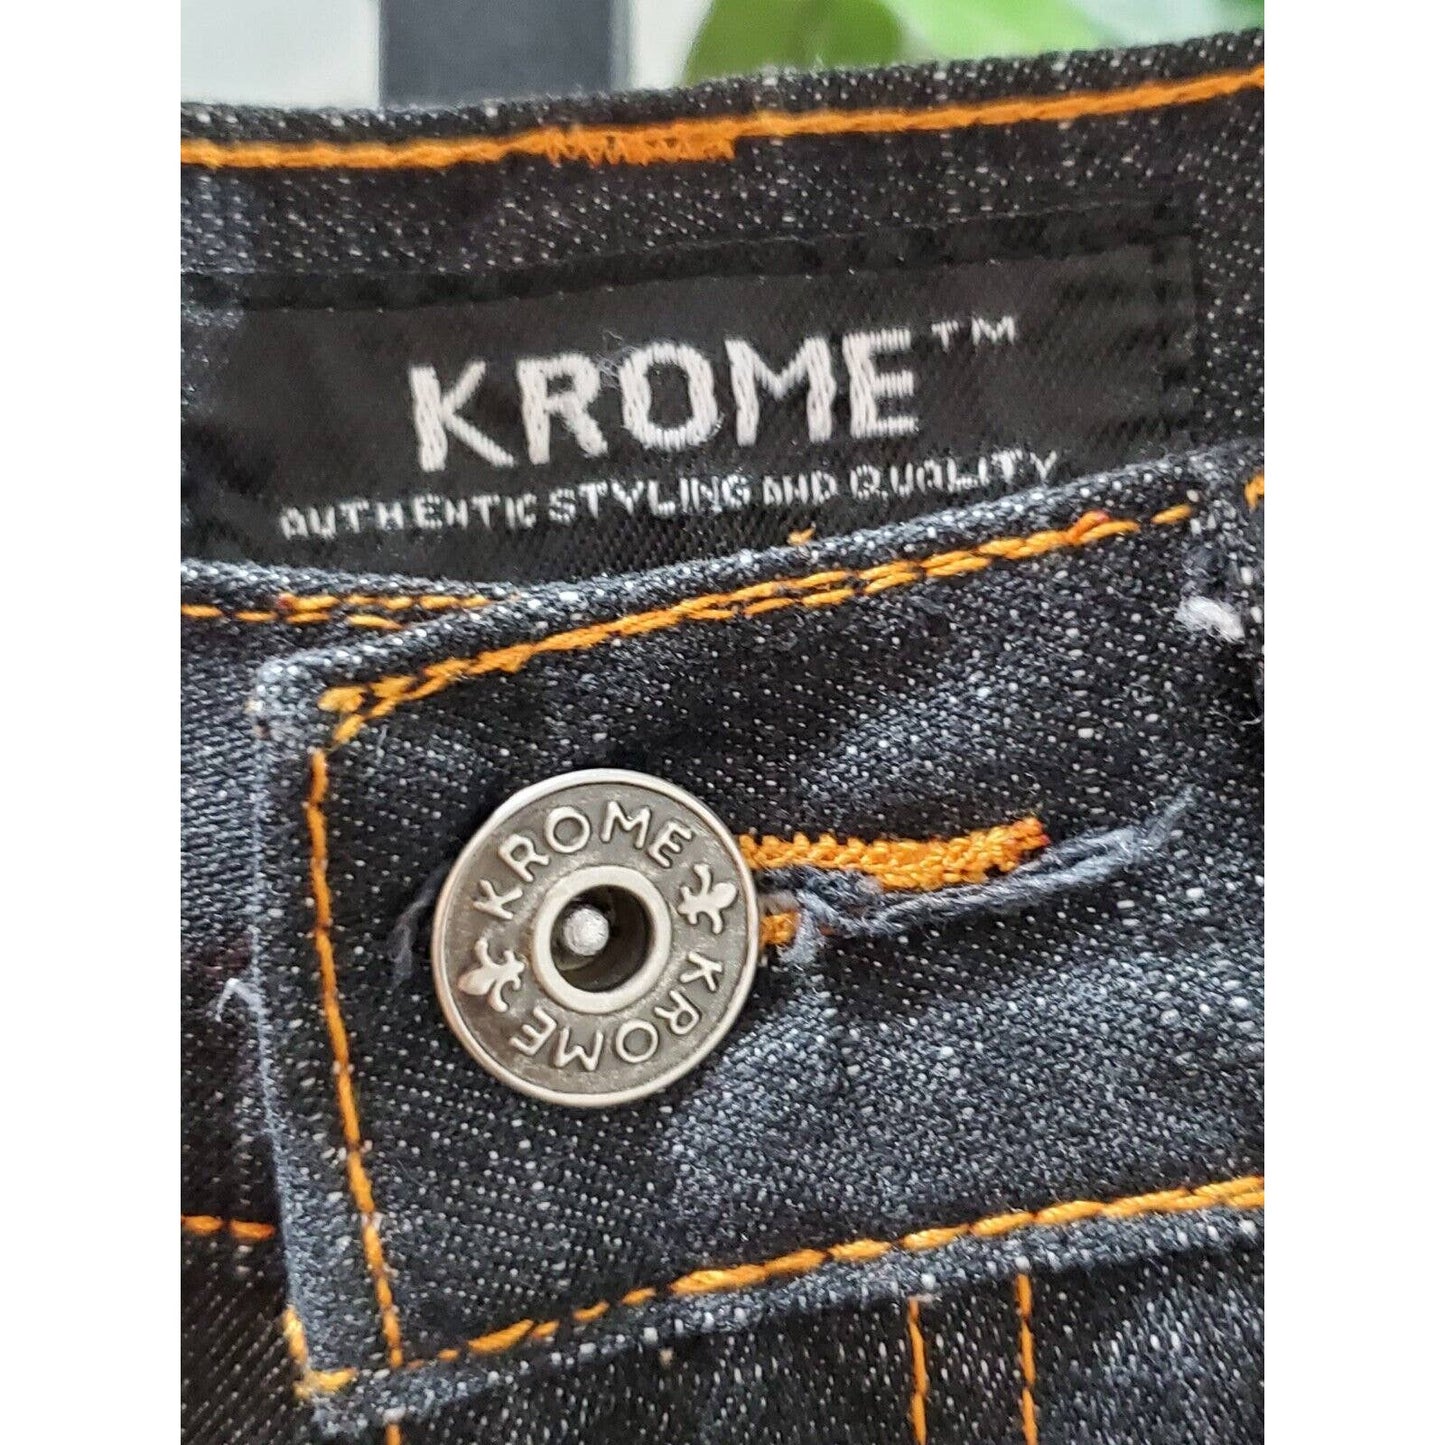 Krome Men Blue Denim Cotton High Rise Straight Fit Casual Jeans Pant Size 34/32